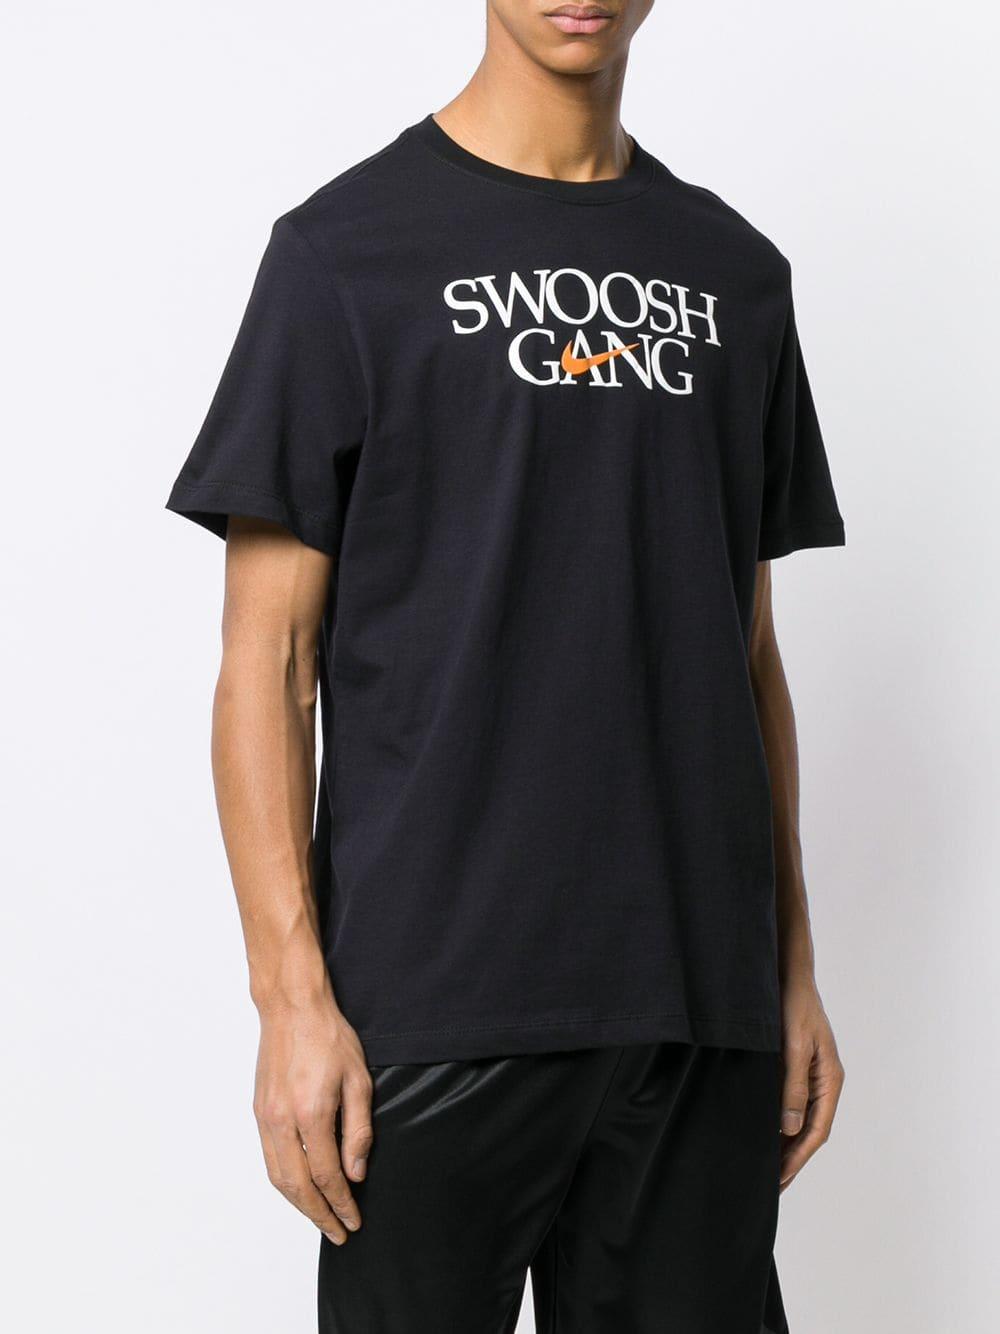 swoosh gang t shirt